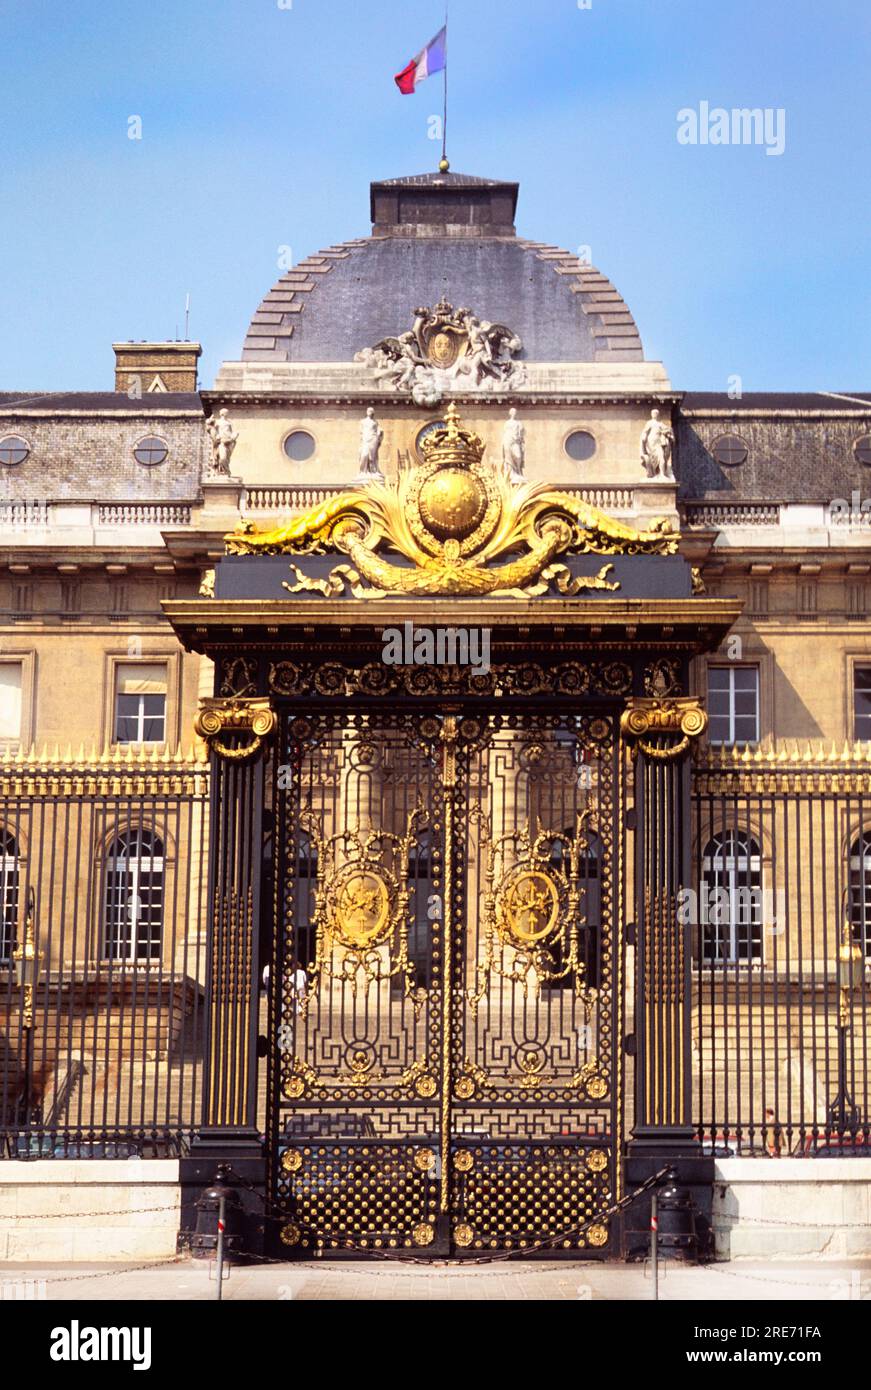 Palais de Justice Paris, East entrance gateway to the historic courthouse Ile de la Cite, capital city, France, Europe Stock Photo